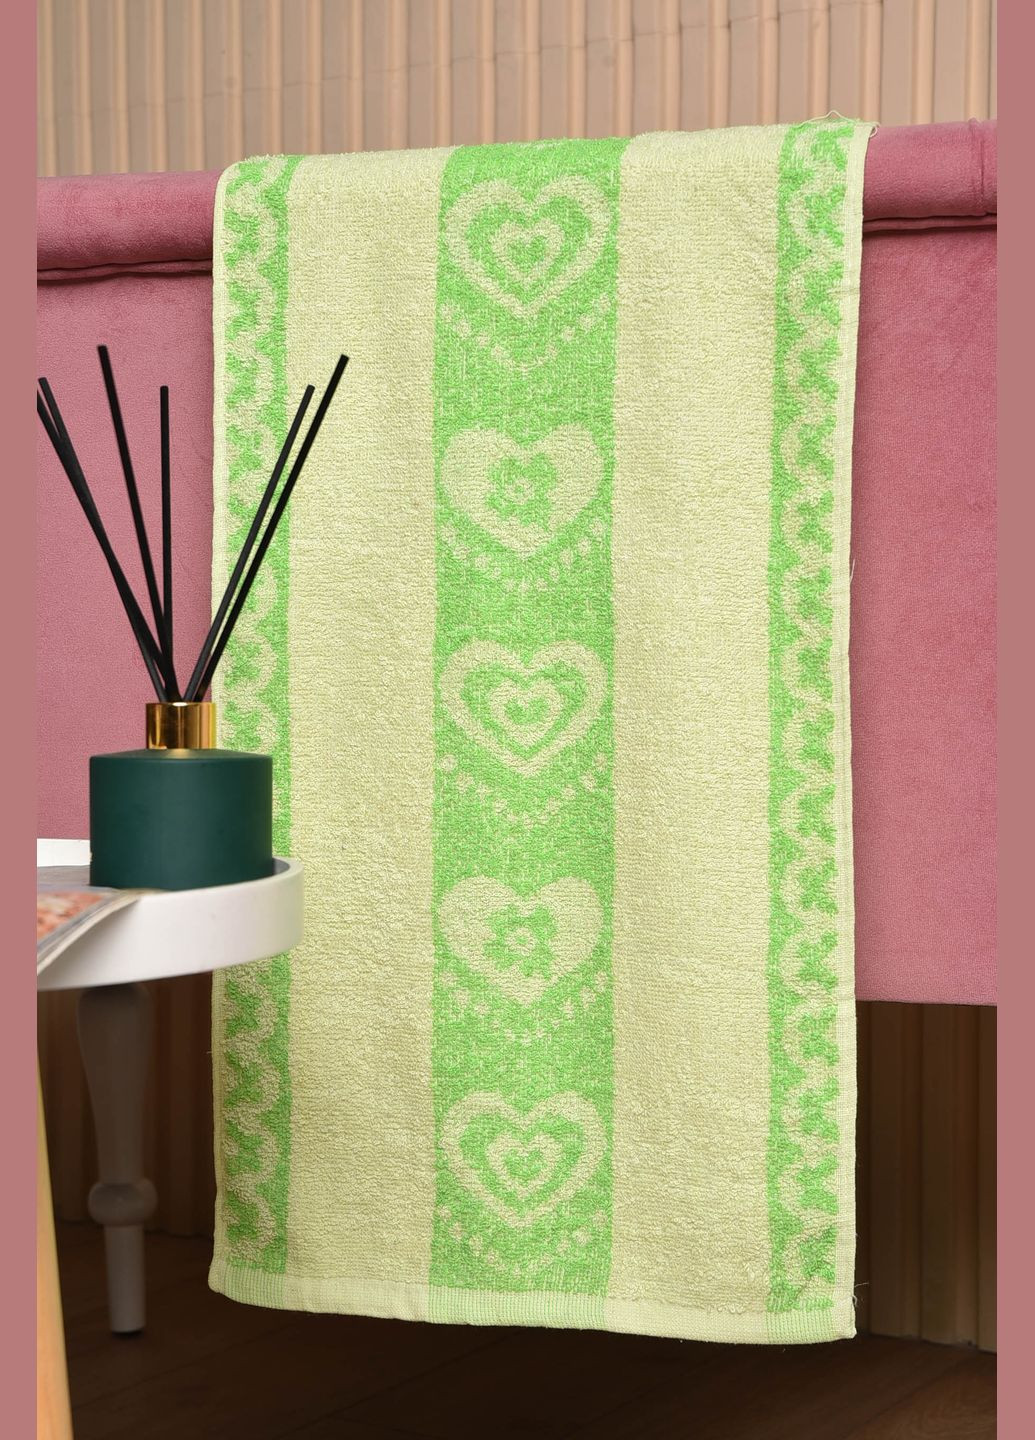 Let's Shop полотенце кухонное махровое зеленого цвета однотонный зеленый производство - Турция